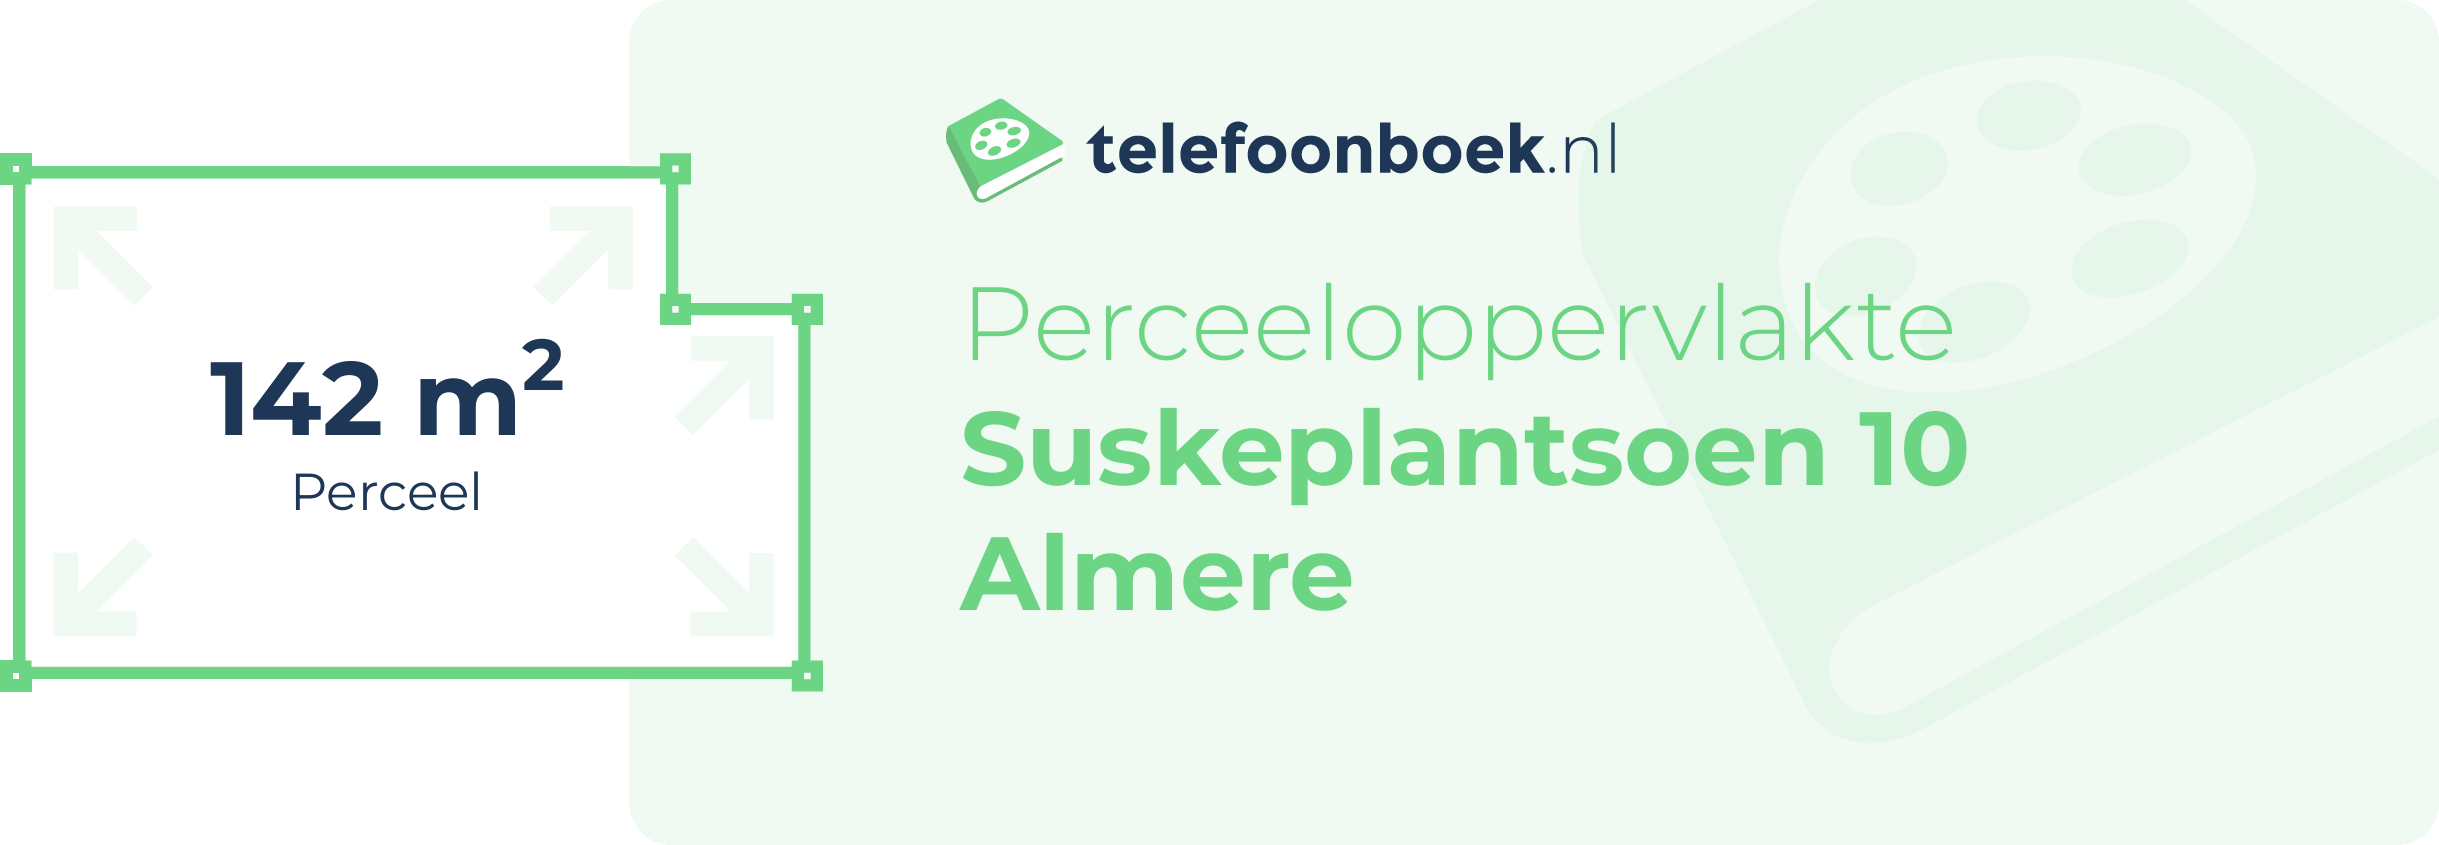 Perceeloppervlakte Suskeplantsoen 10 Almere